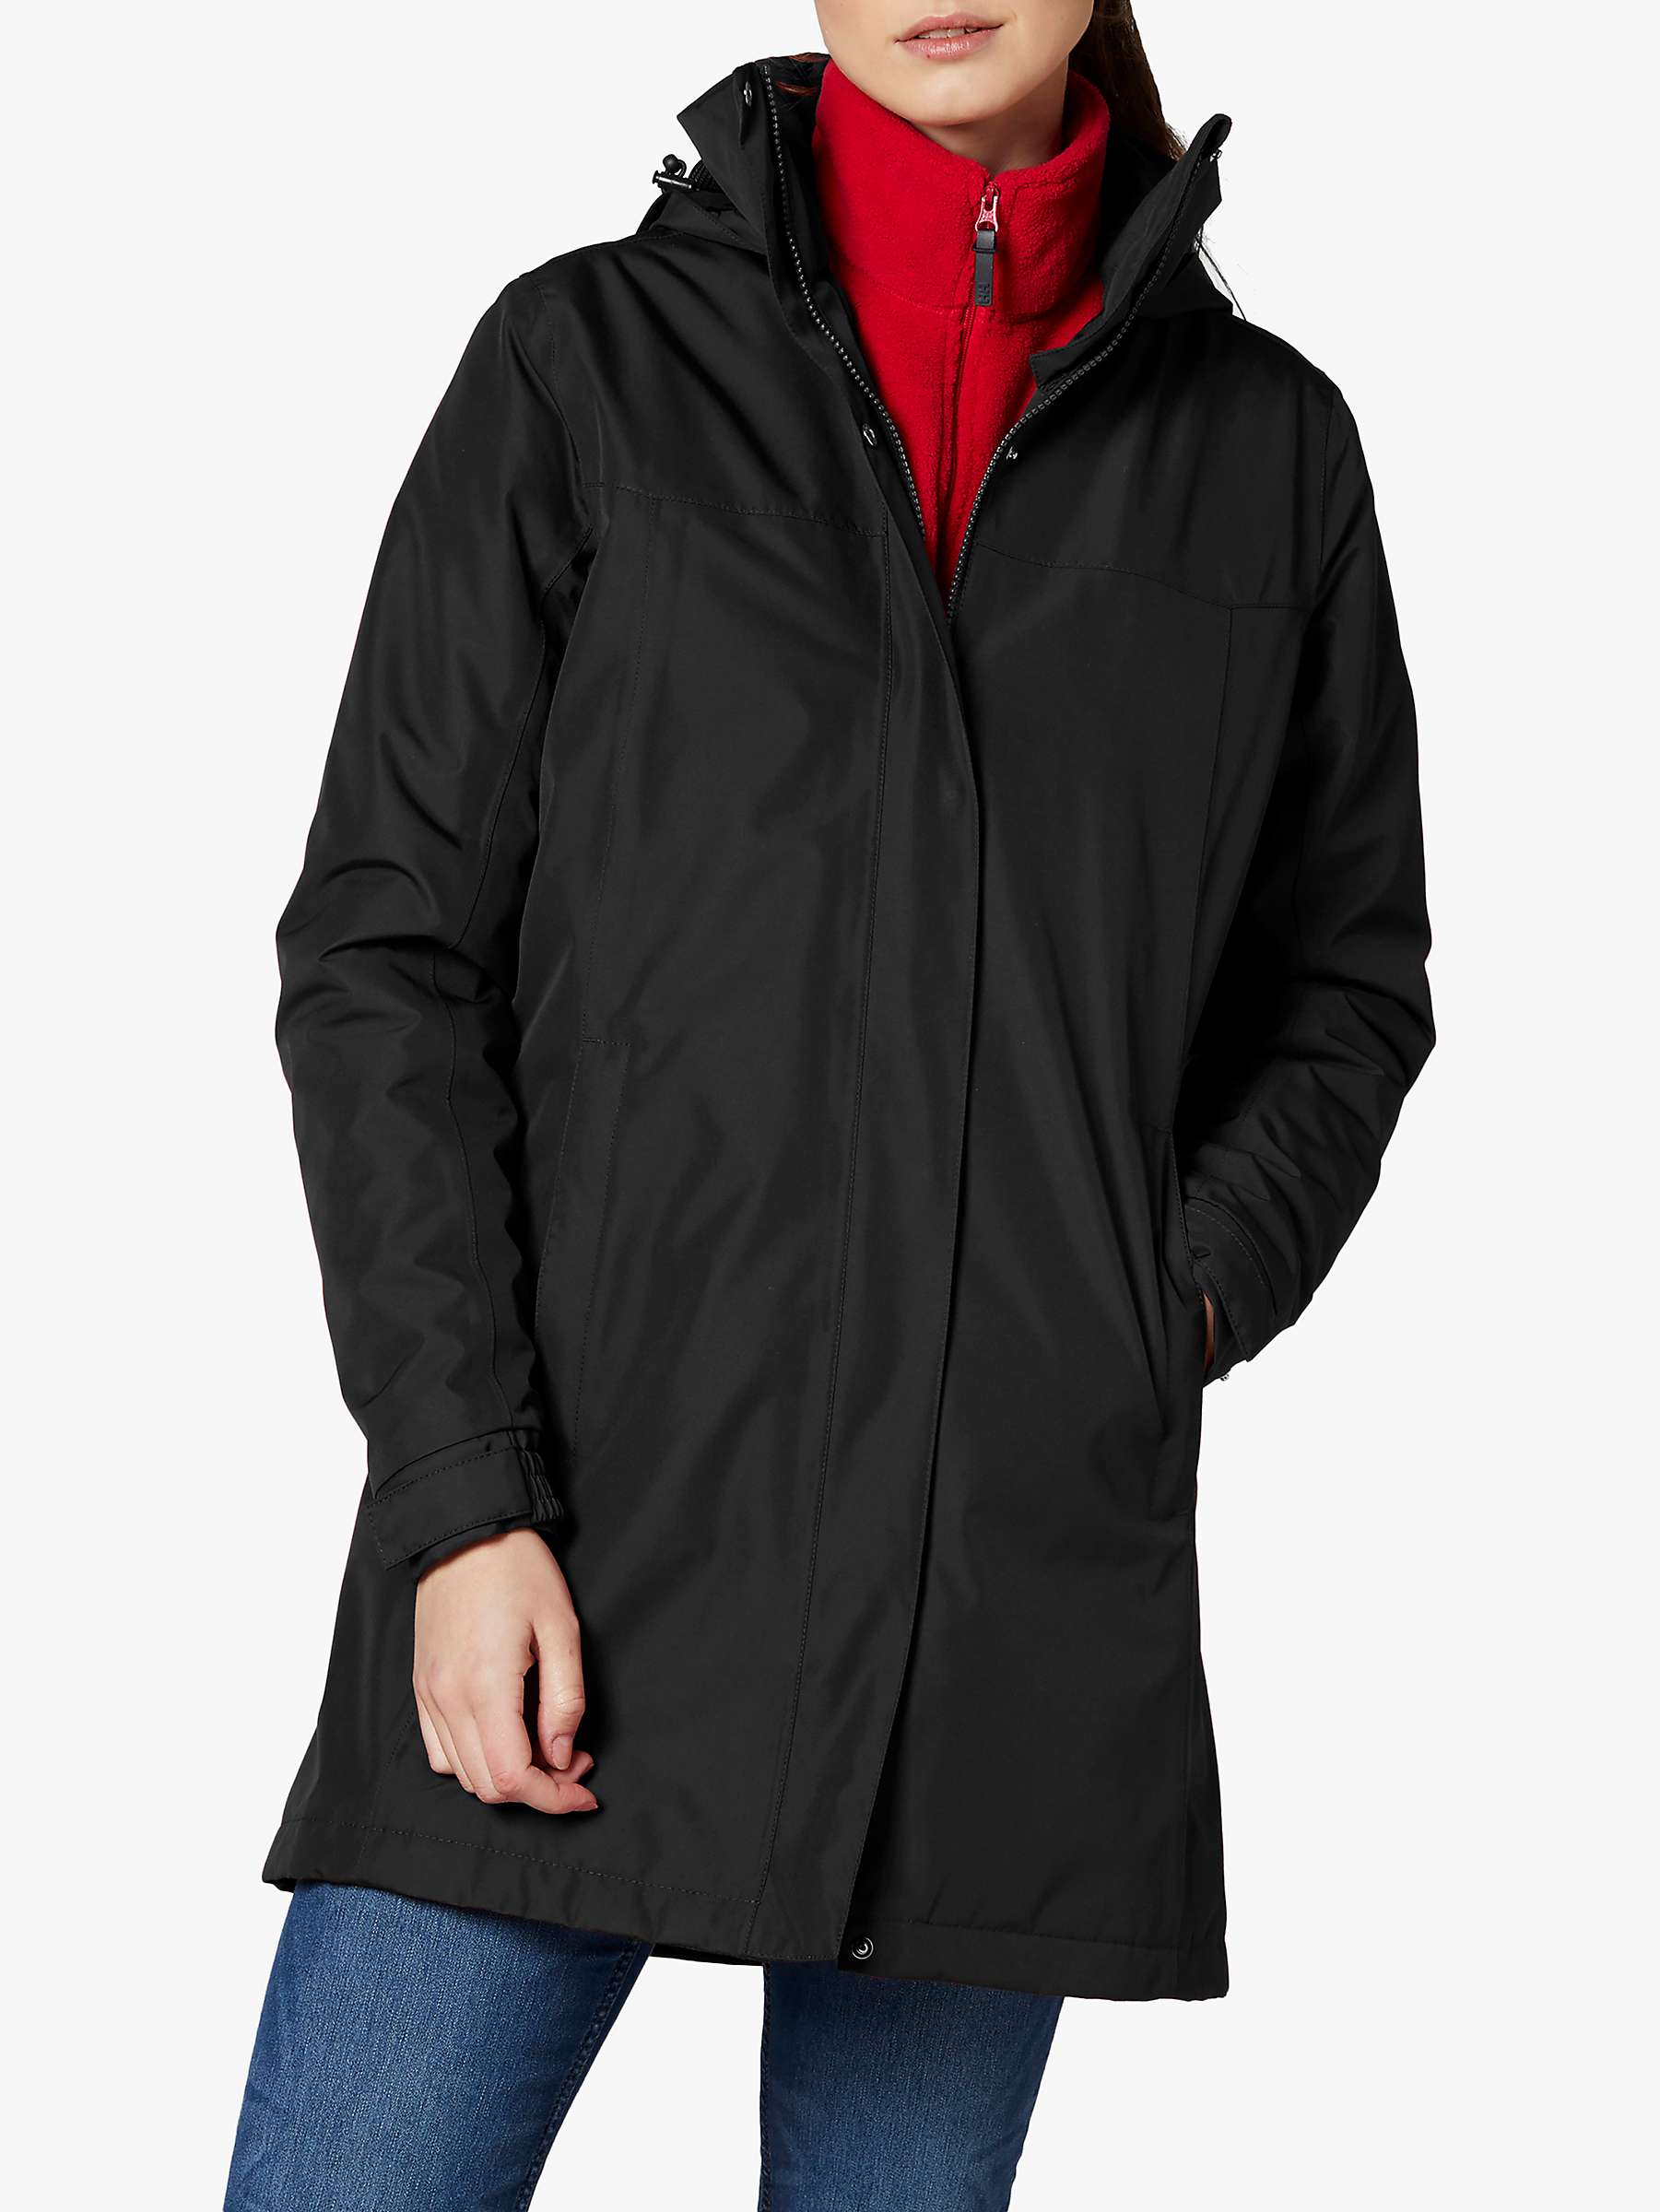 Buy Helly Hansen Aden Women's Long Waterproof Jacket, Black Online at johnlewis.com